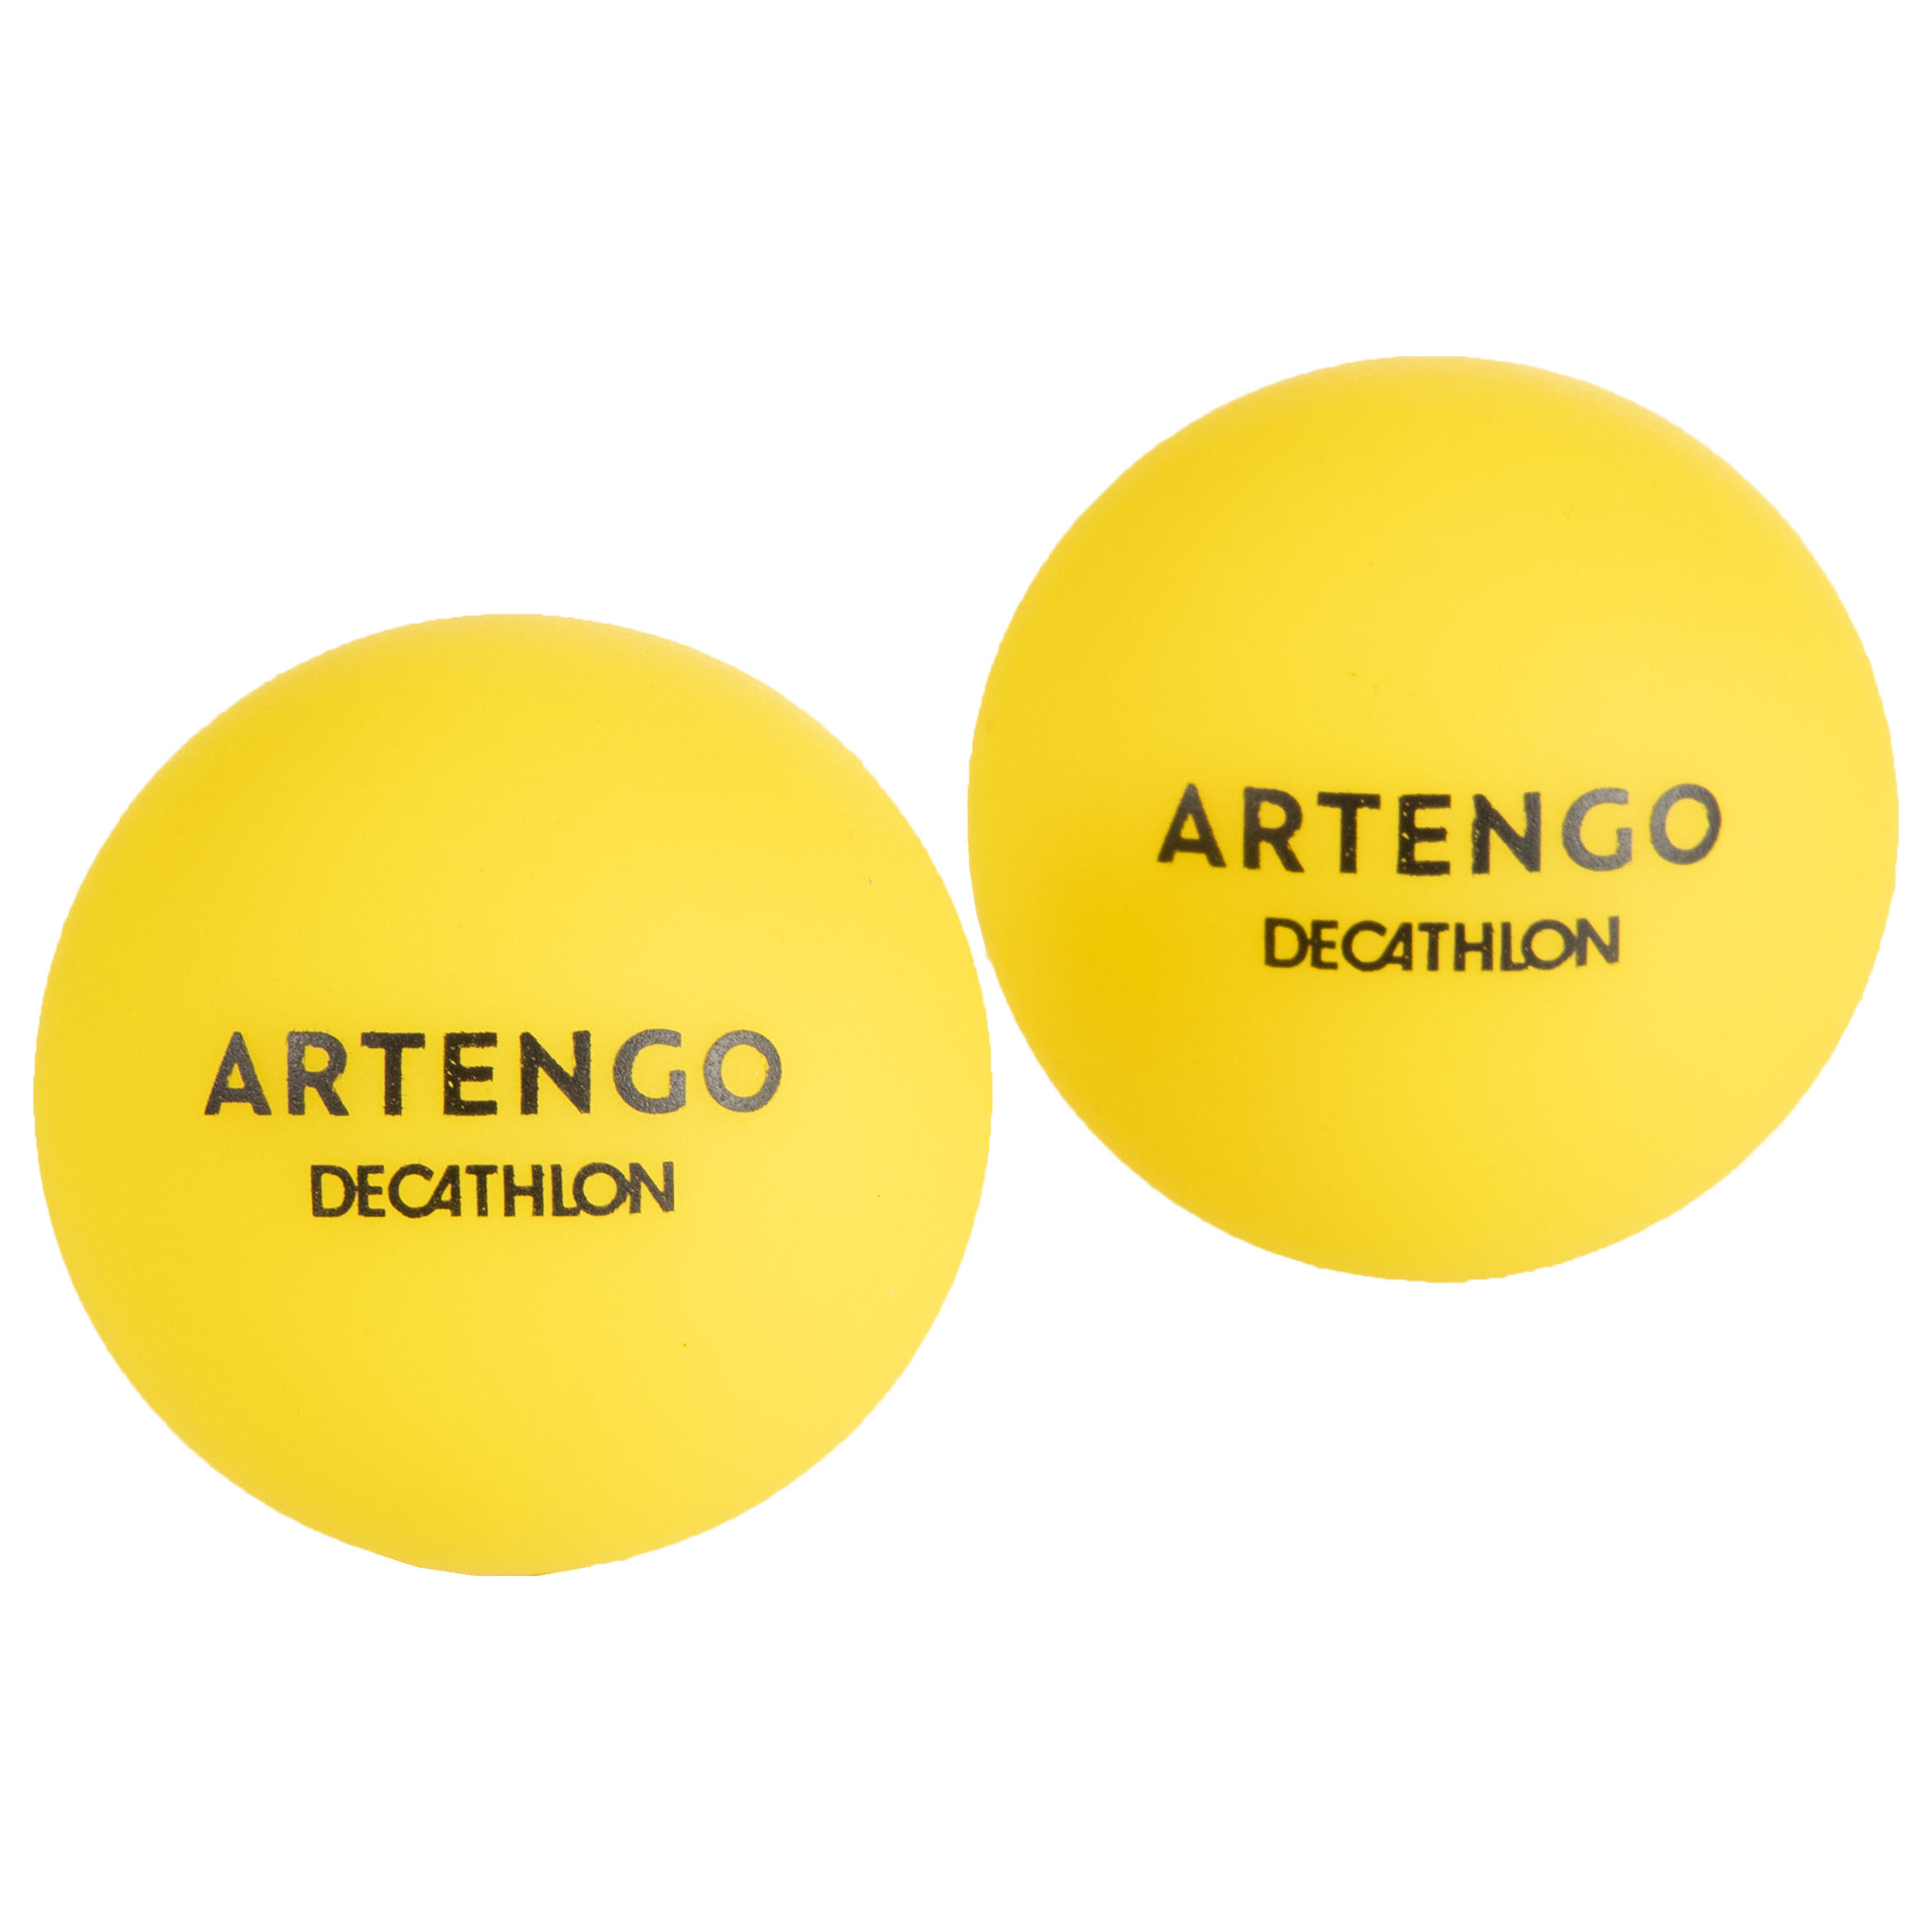 Buy ARTENGO Online with Decathlon